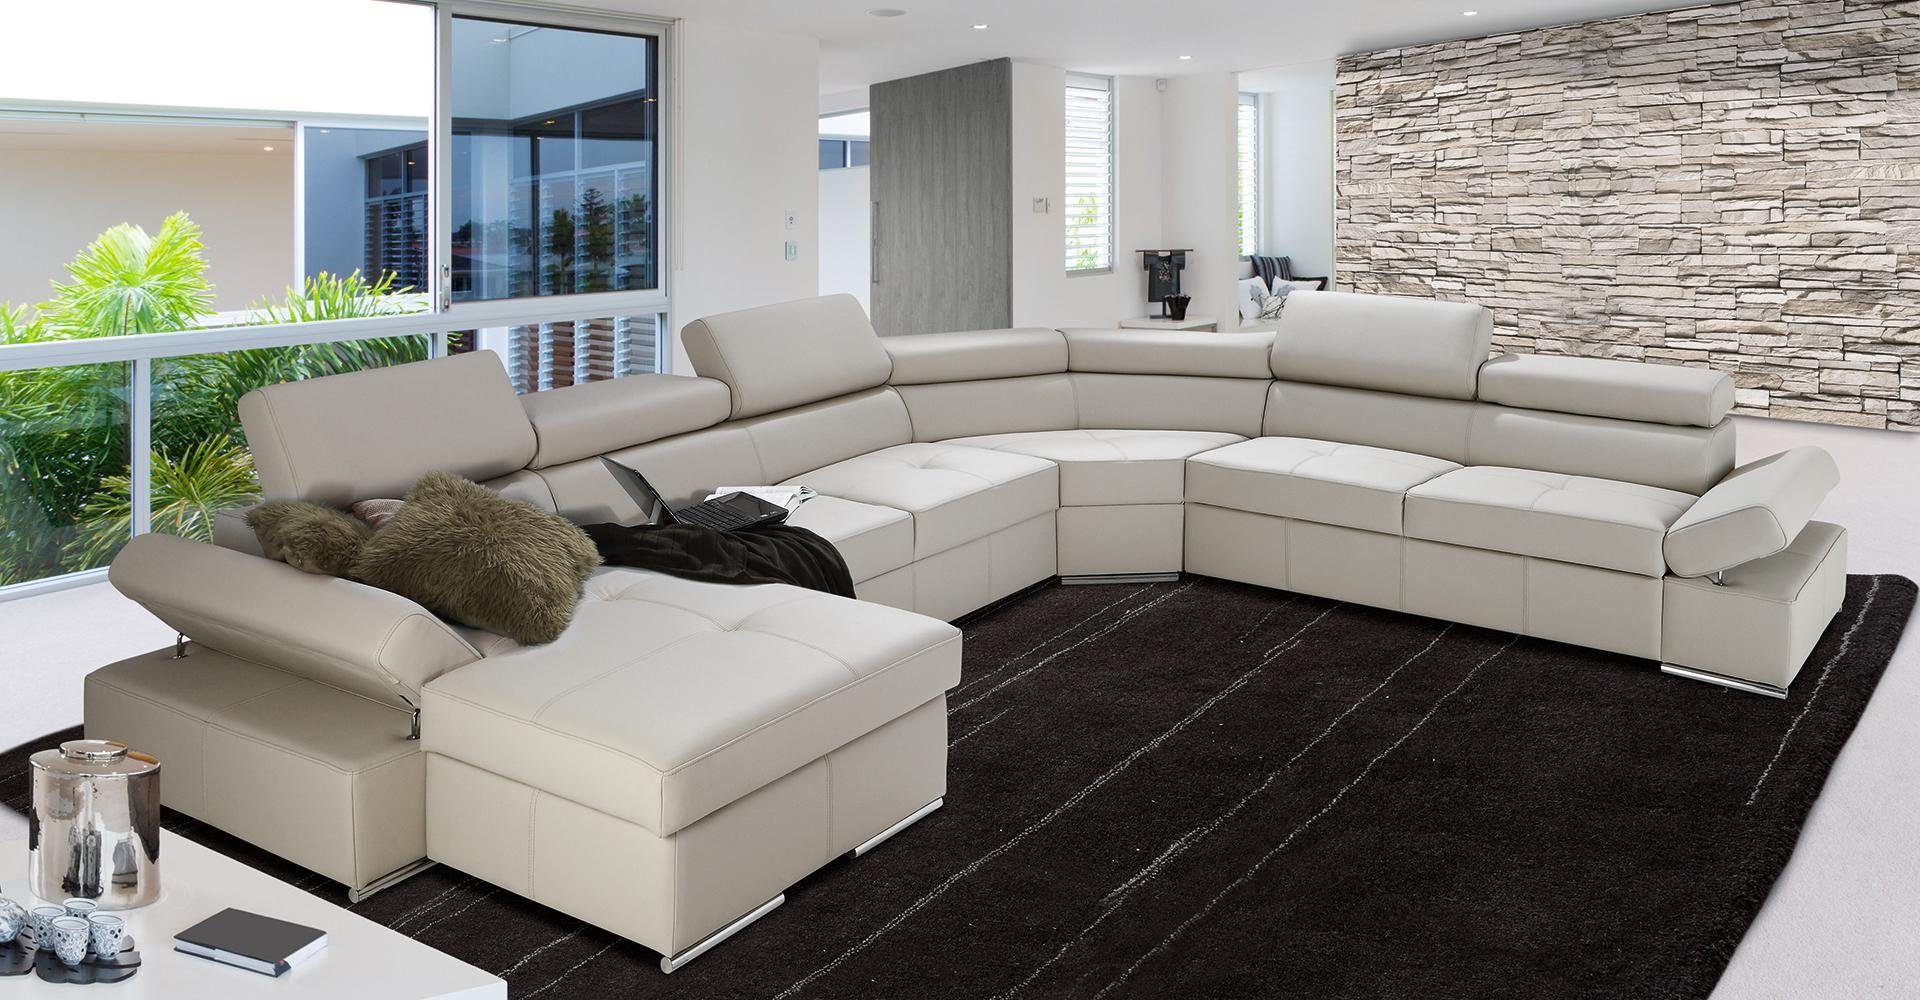 JVmoebel Ecksofa, XXL Wohnlandschaft Garnitur Design Sofas Beige Polster Sofa 100% Eck Couch